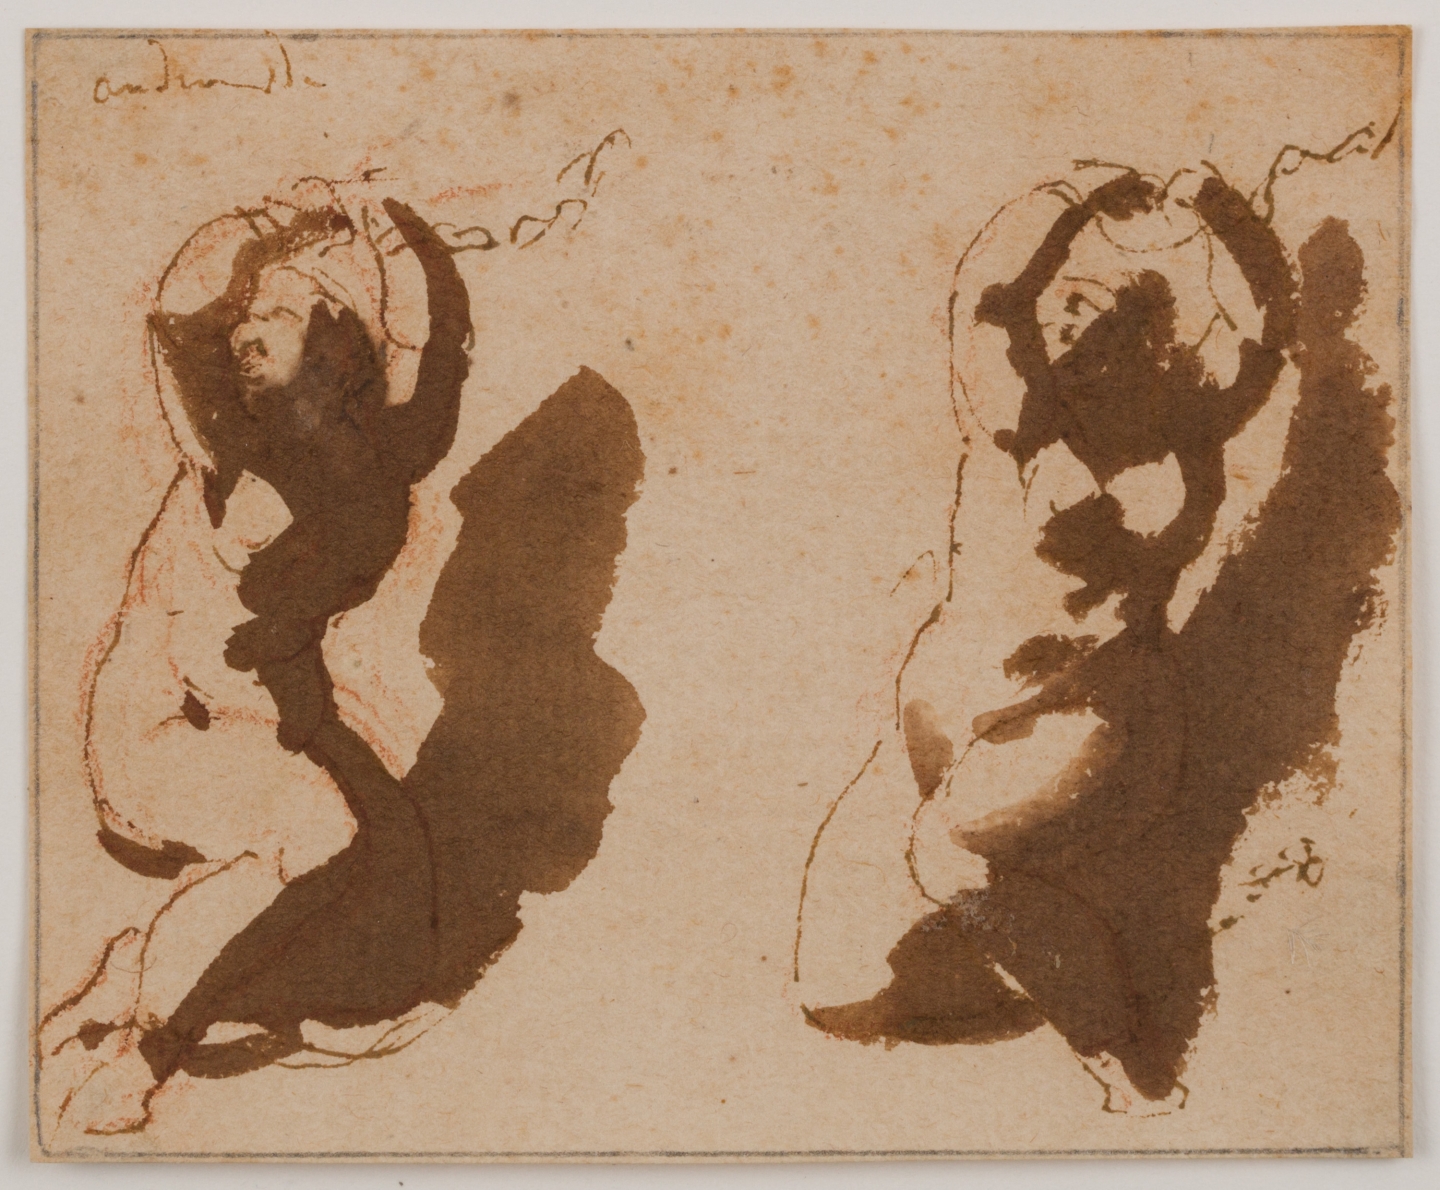 Jan de Bisschop (Amsterdam, 1628-1671 The Hague) Two studies of Andromeda